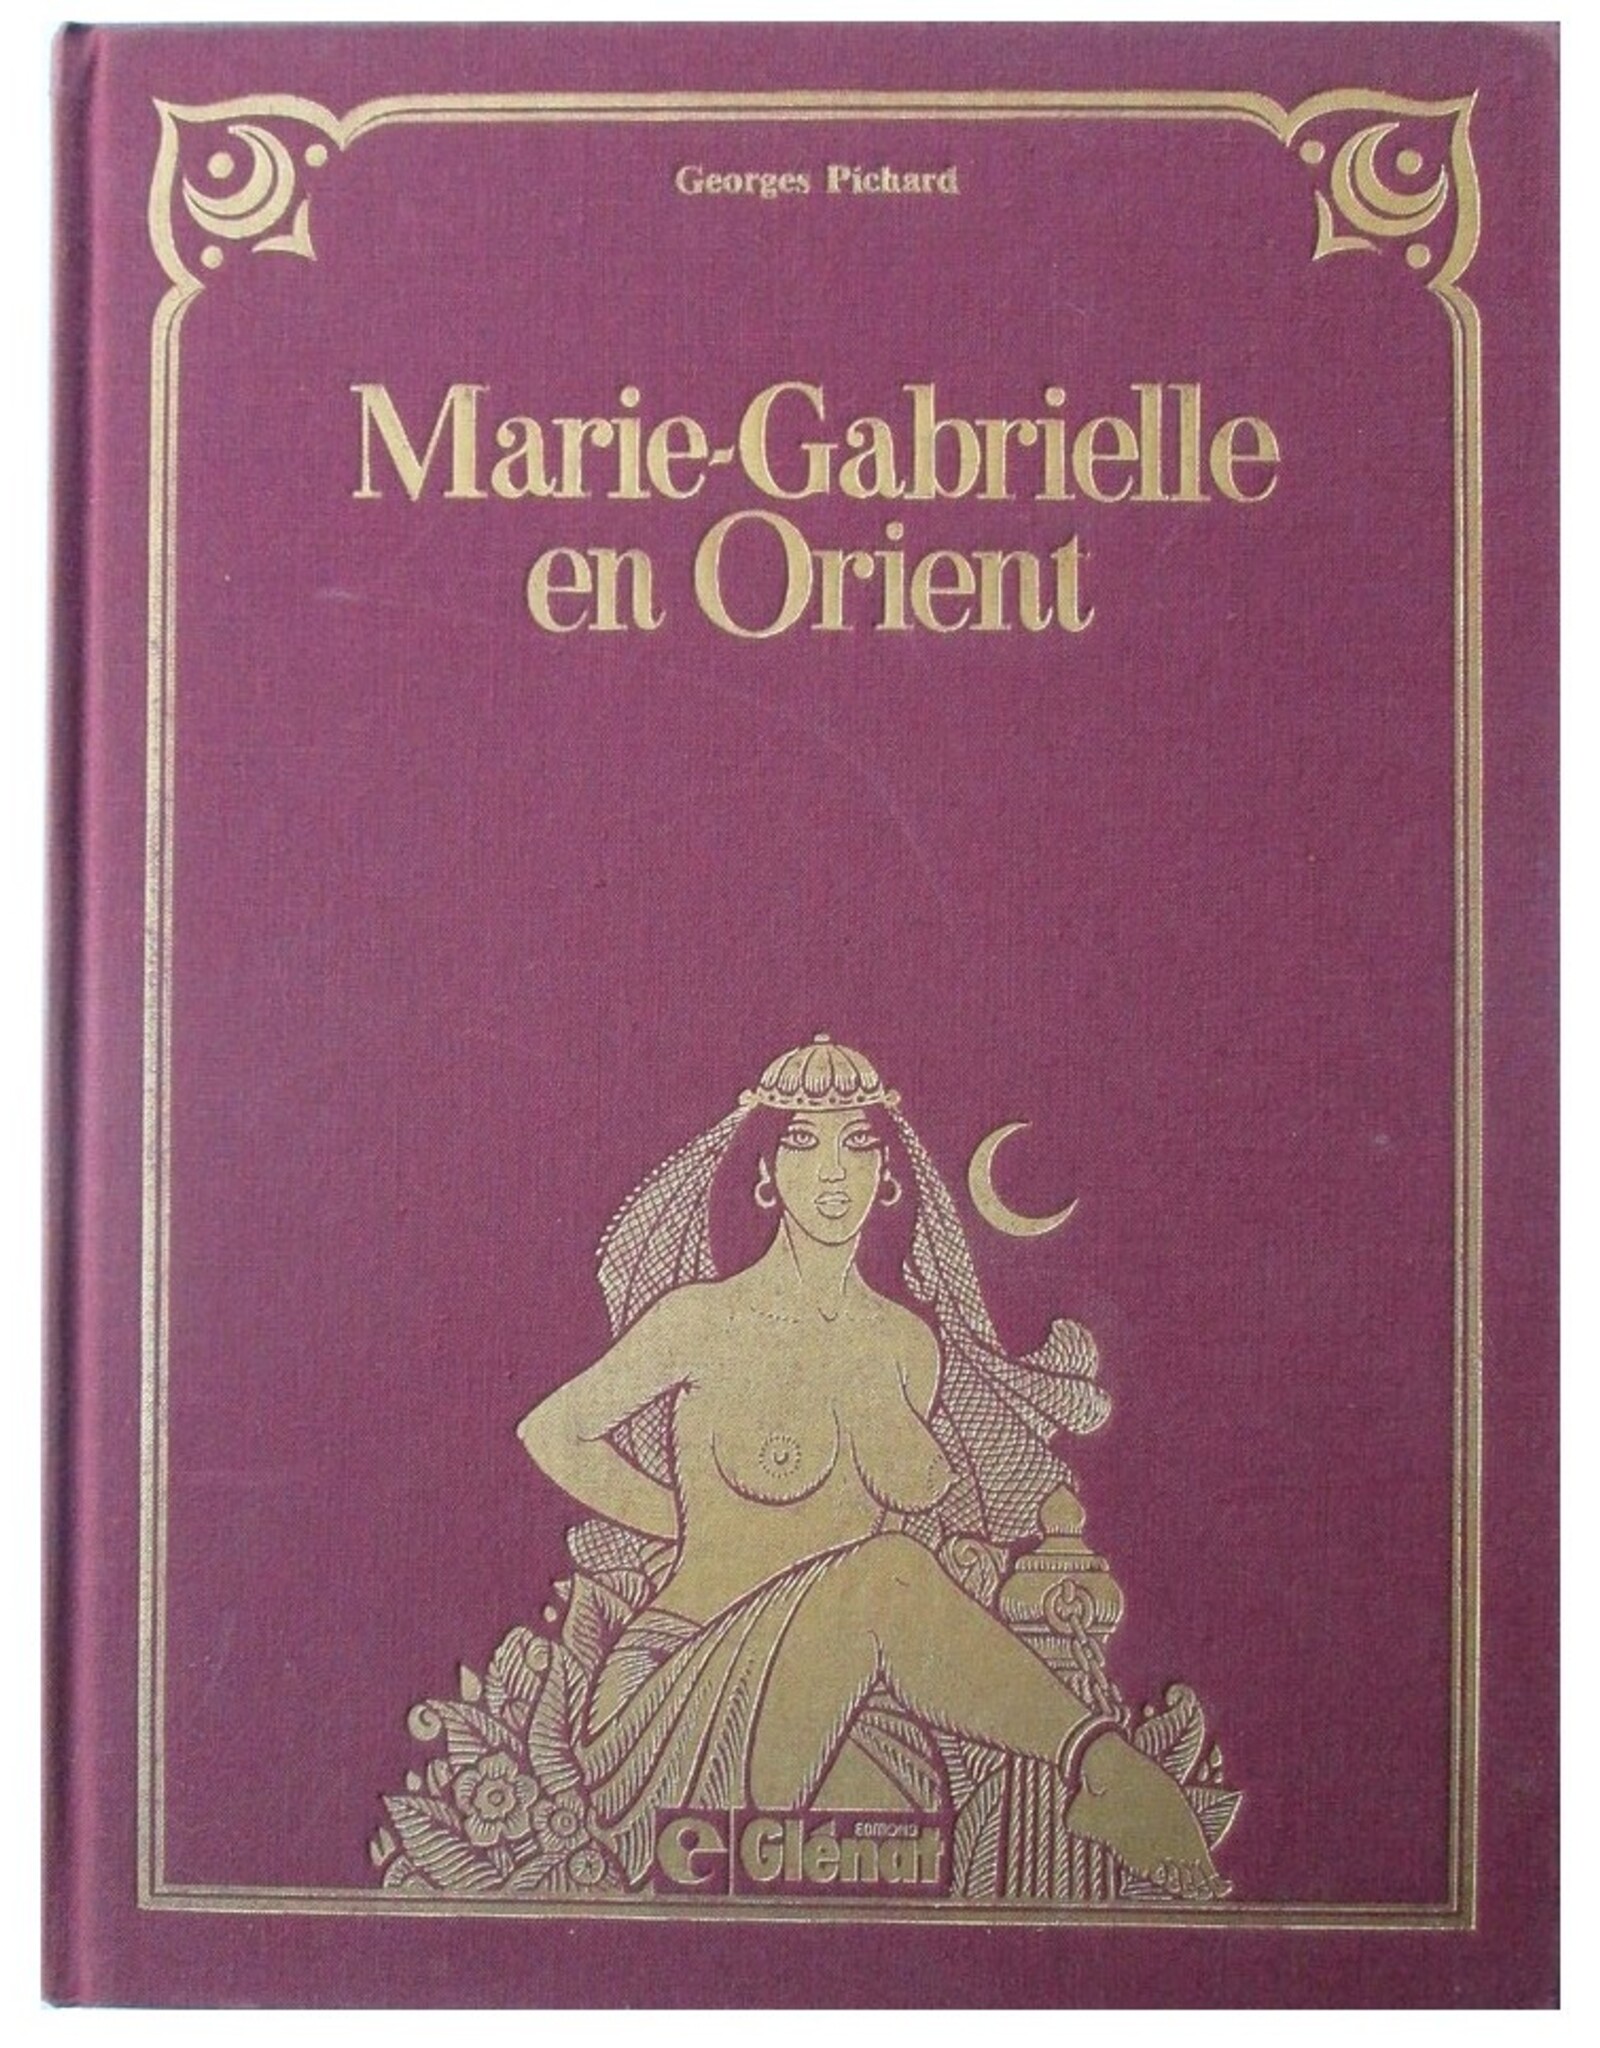 Georges Pichard - Marie-Gabrielle en Orient